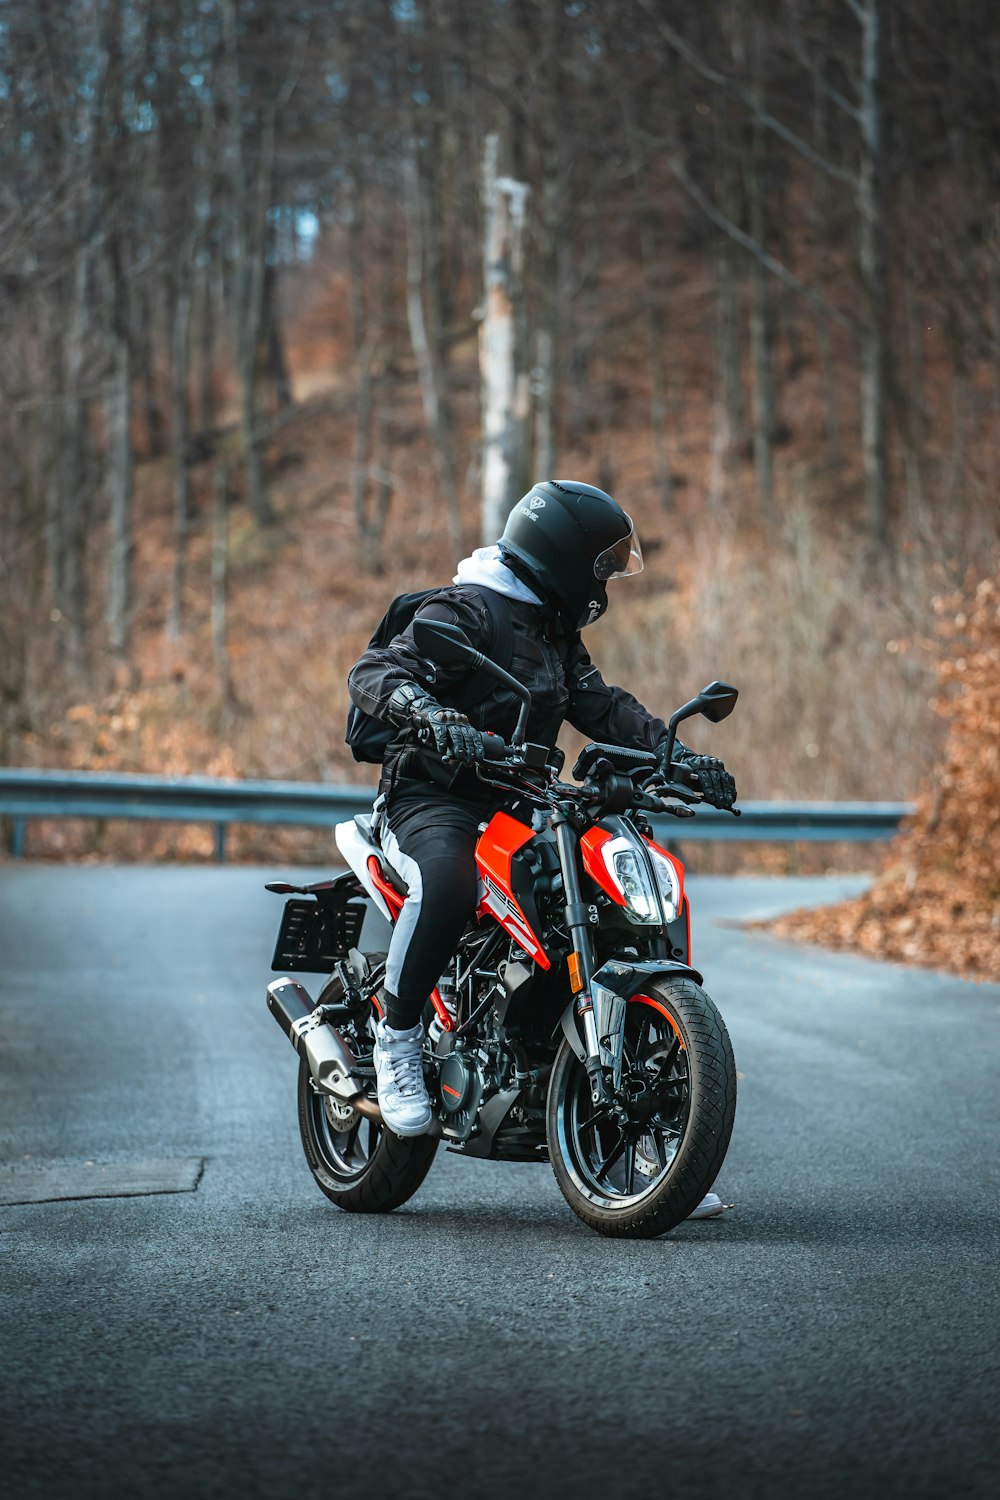 Uomo in giacca nera che guida una motocicletta arancione e nera su strada durante il giorno